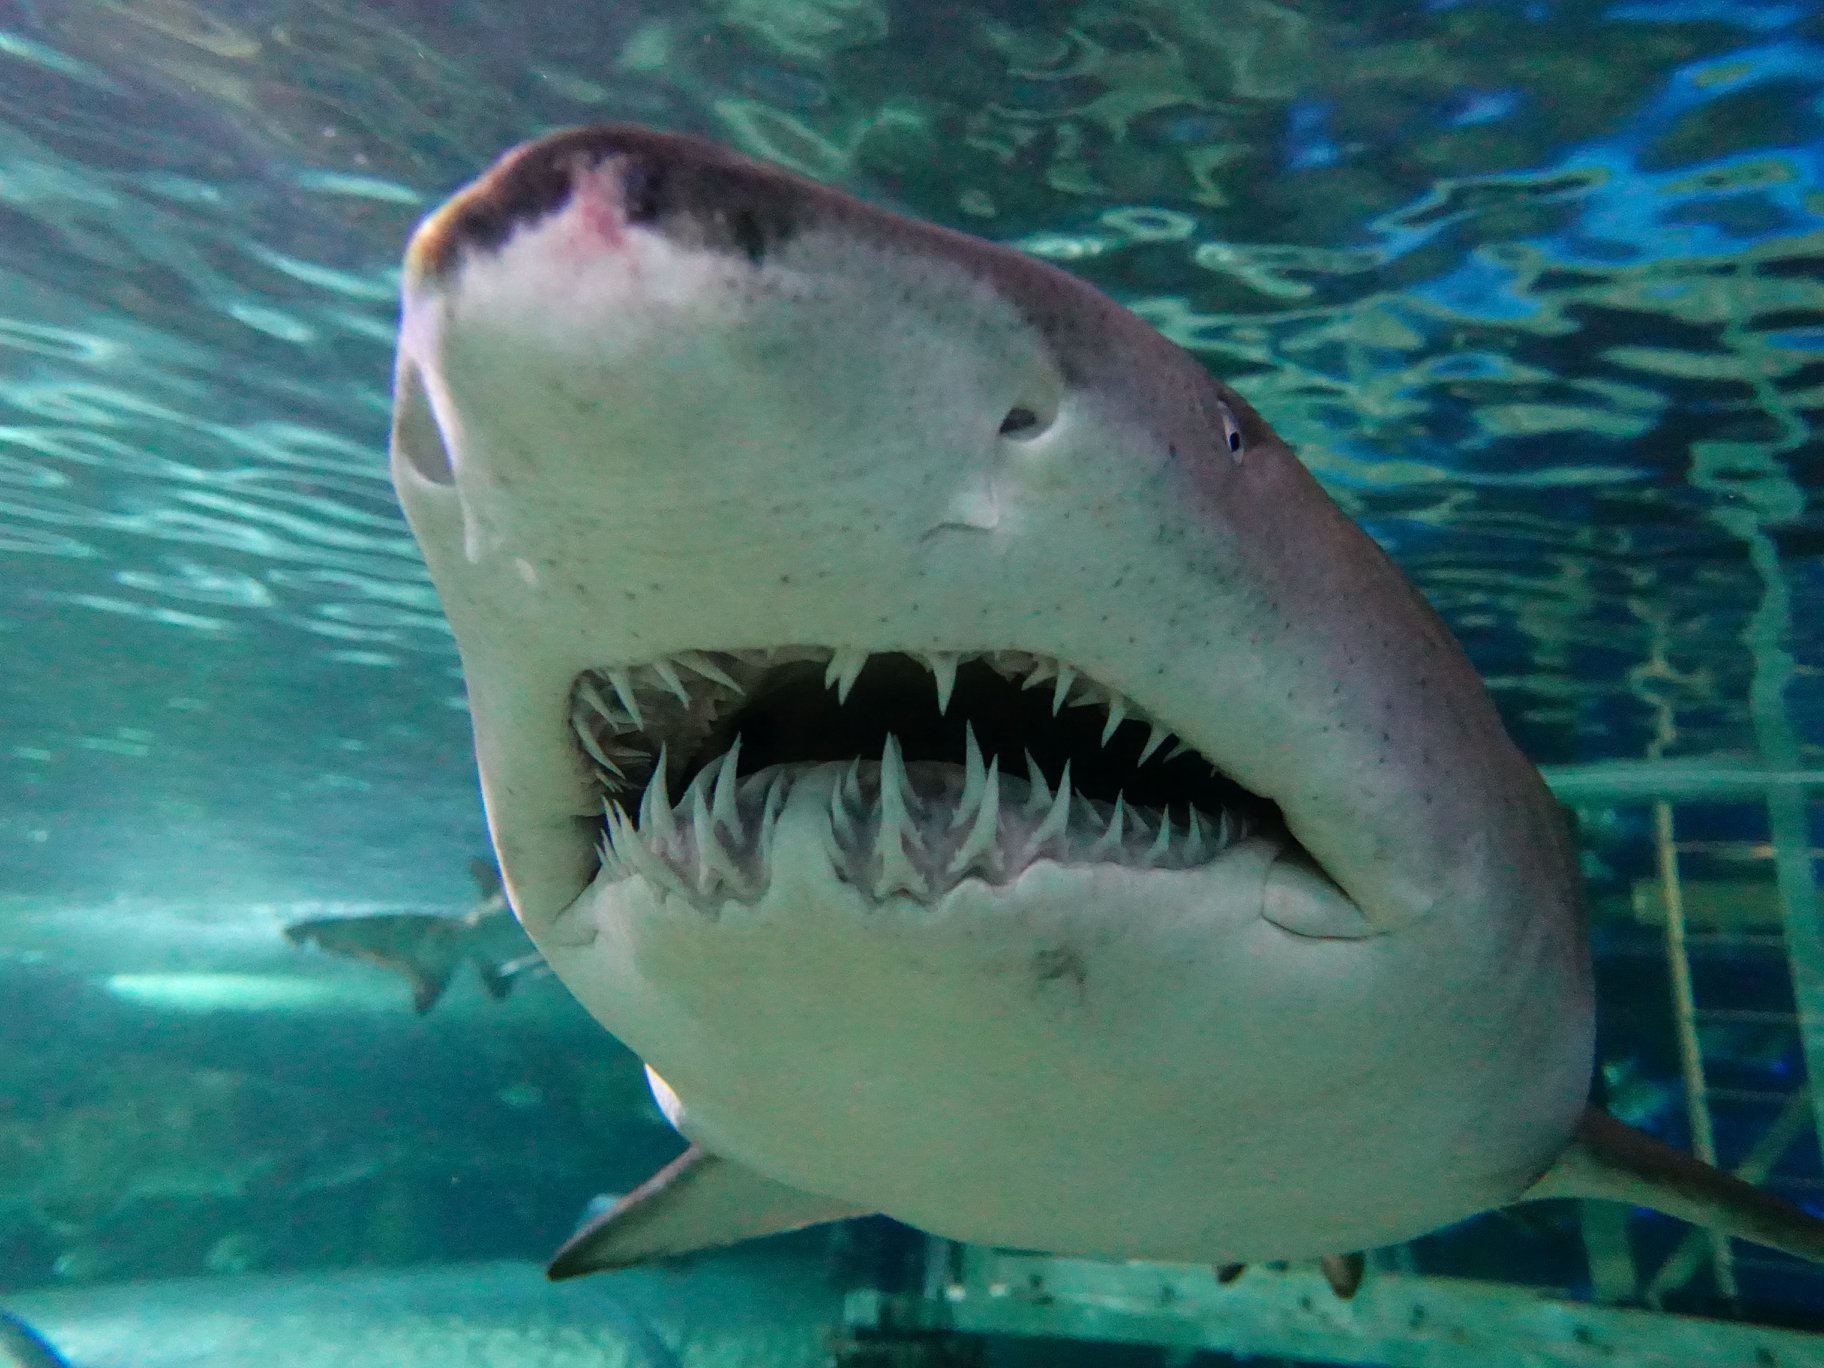 Grey Nurse shark teeth on display at SEA LIFE Sydney aquarium